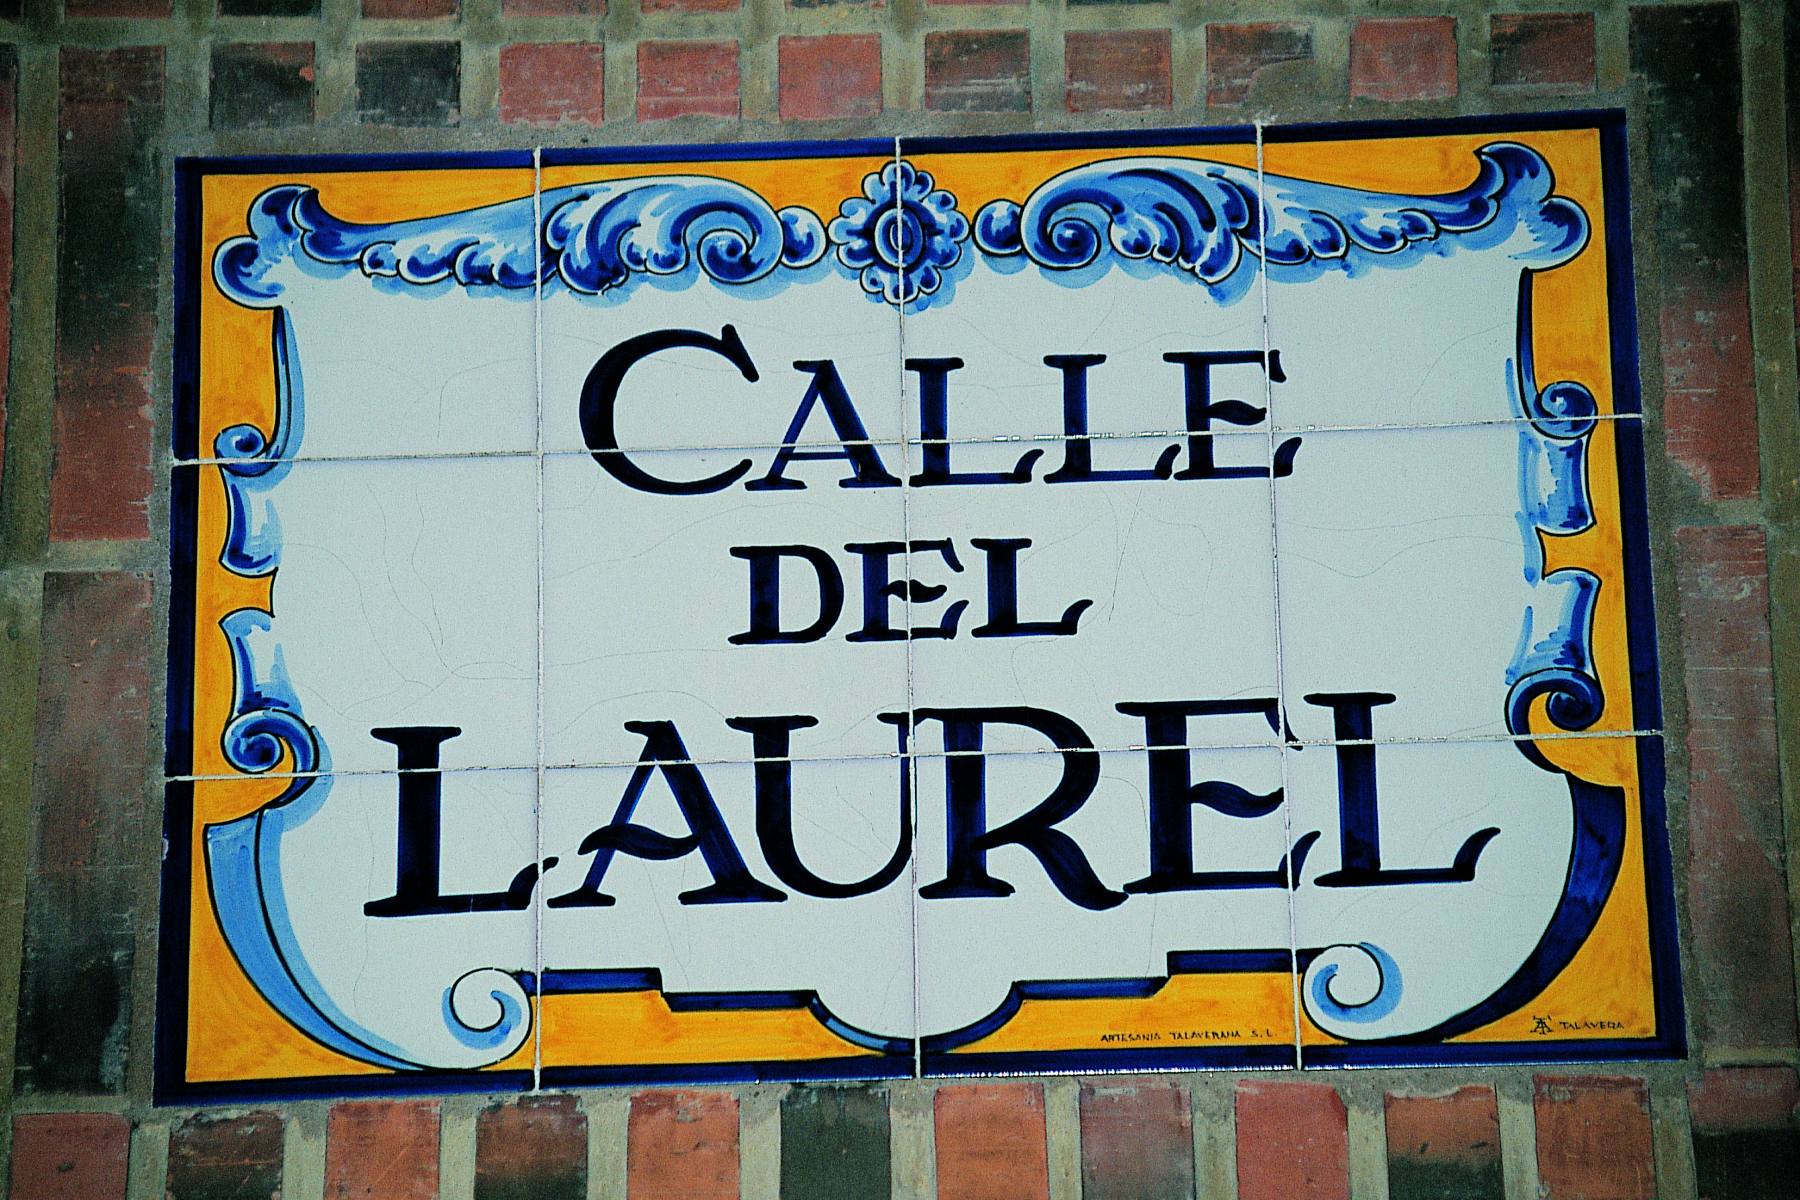 CALLE-LAUREL